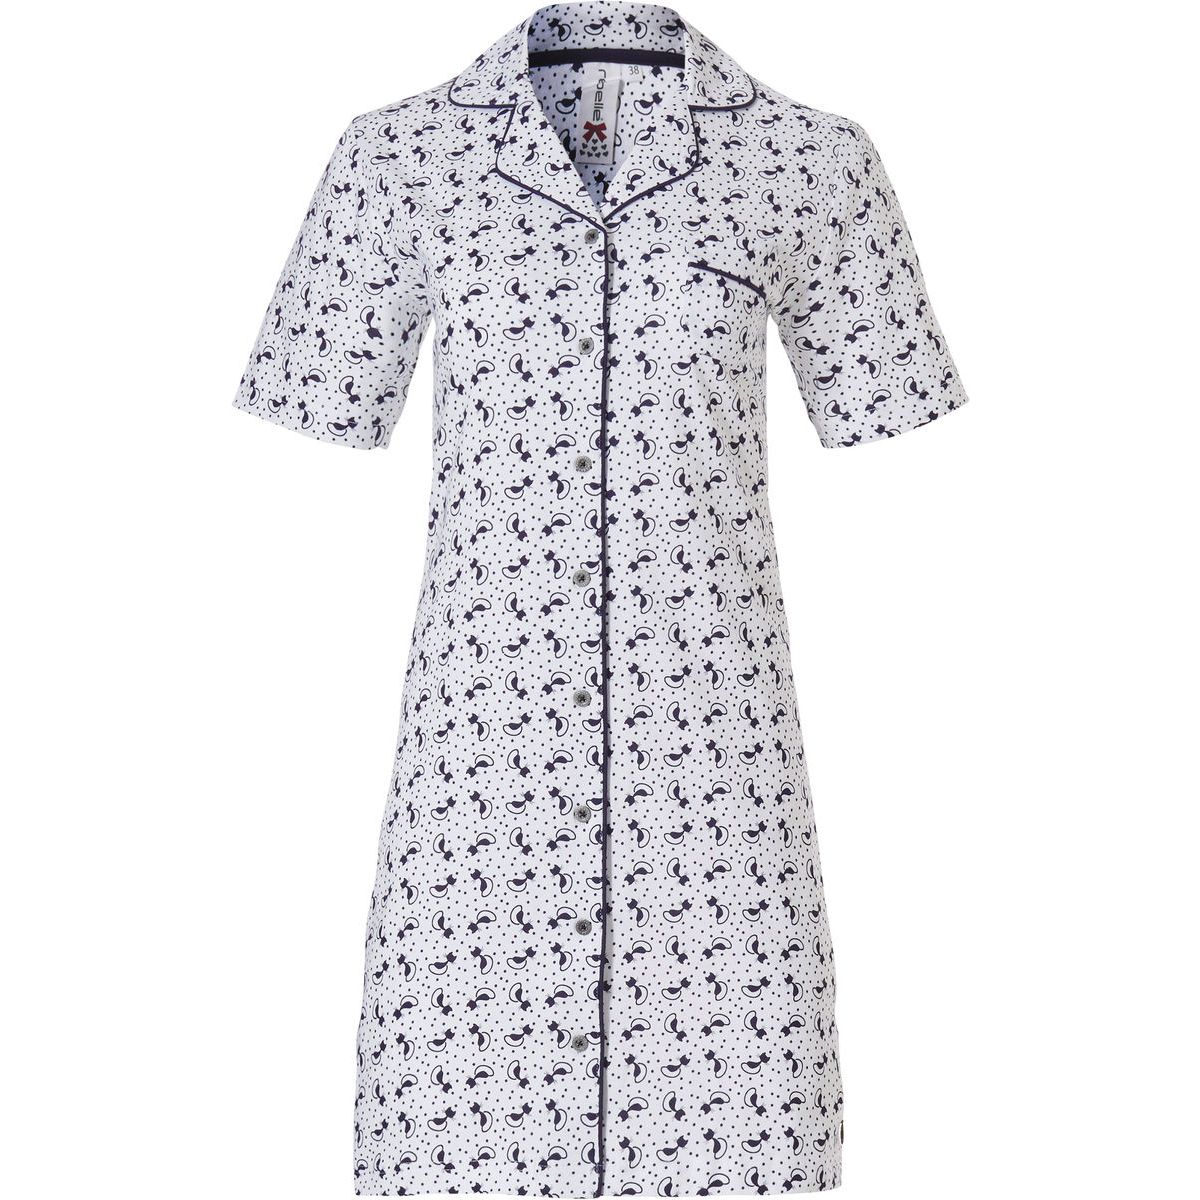 tiran verlangen toernooi Doorknoop nachthemd katoen | Online de mooiste pyjama's, nachthemden,  ondermode en meer